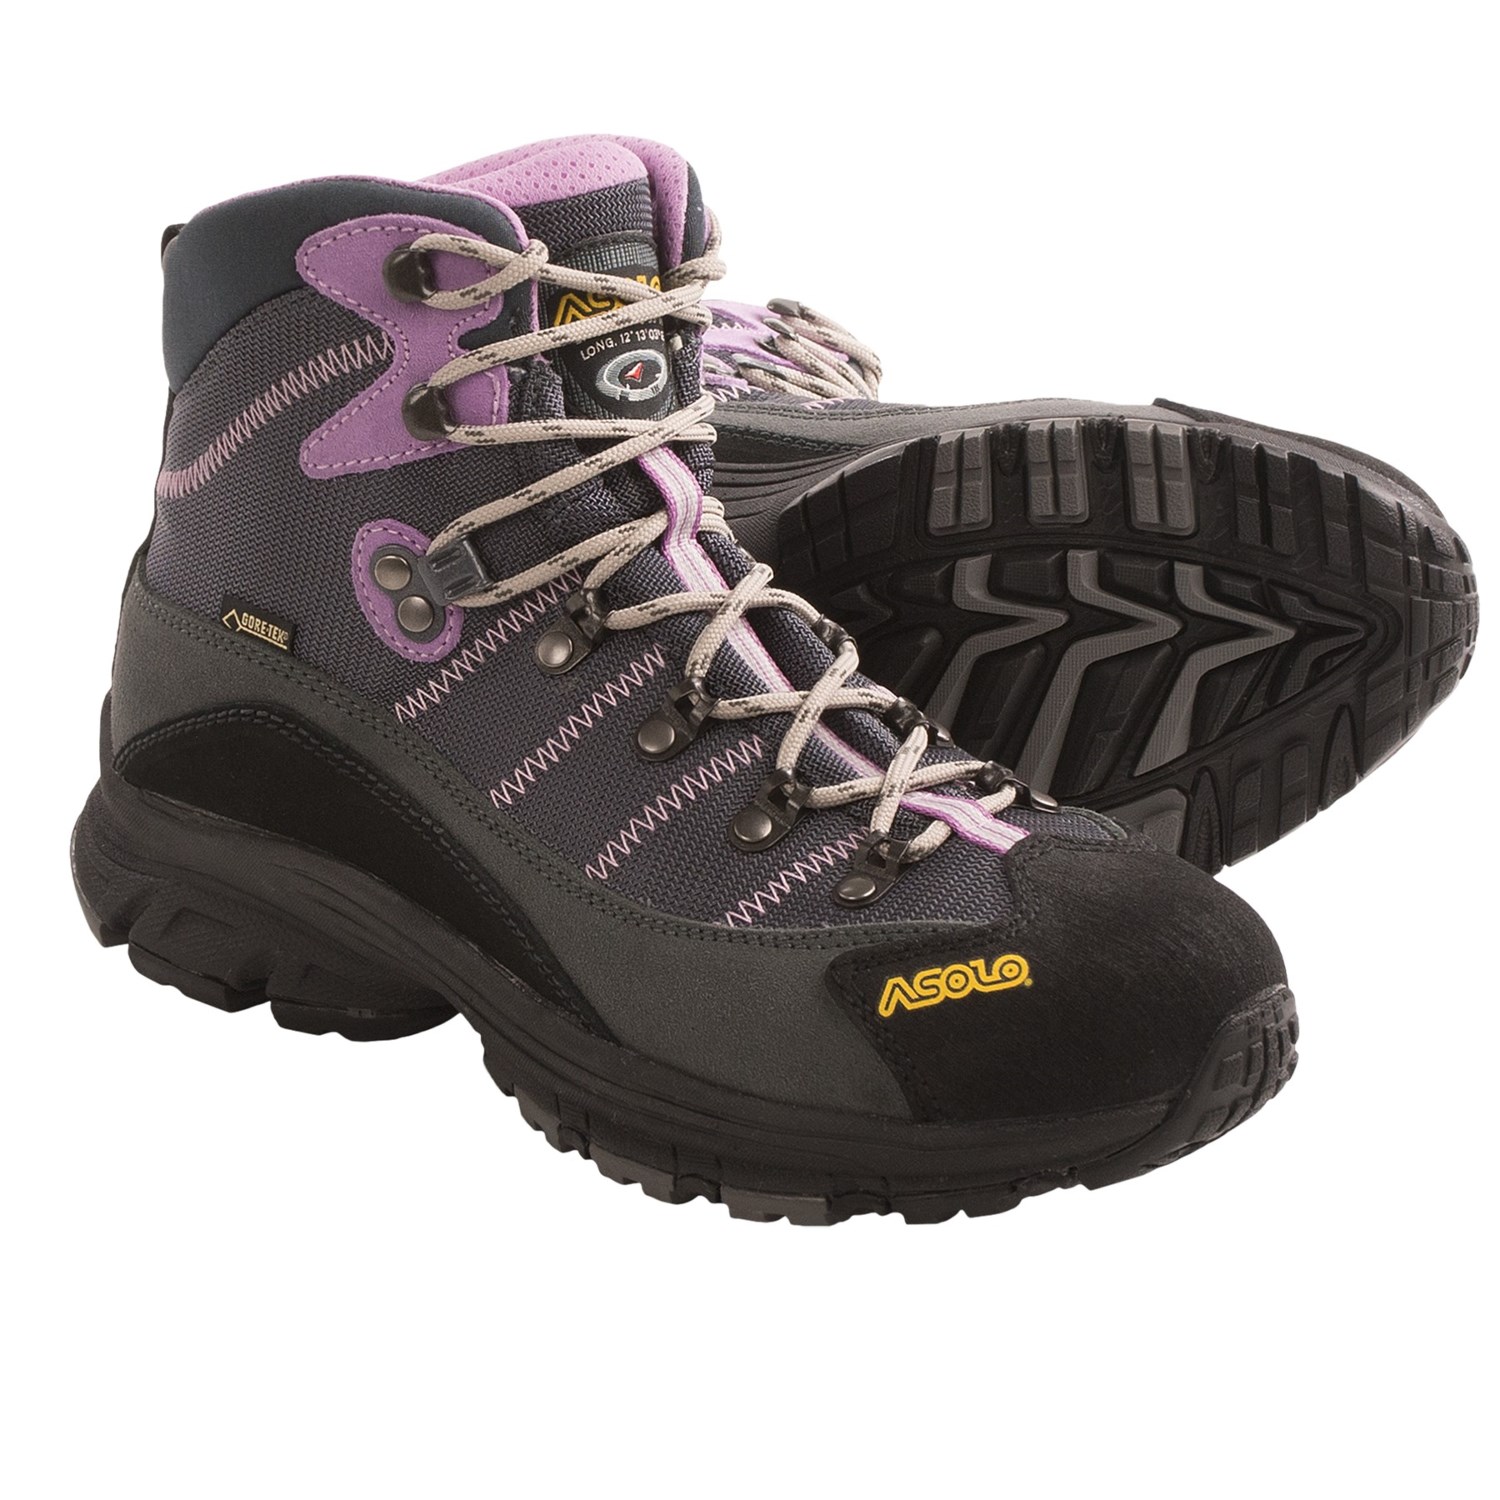 womens walking boots asolo horizon 1 gore-tex® hiking boots - waterproof (for women) in LQZMTBR